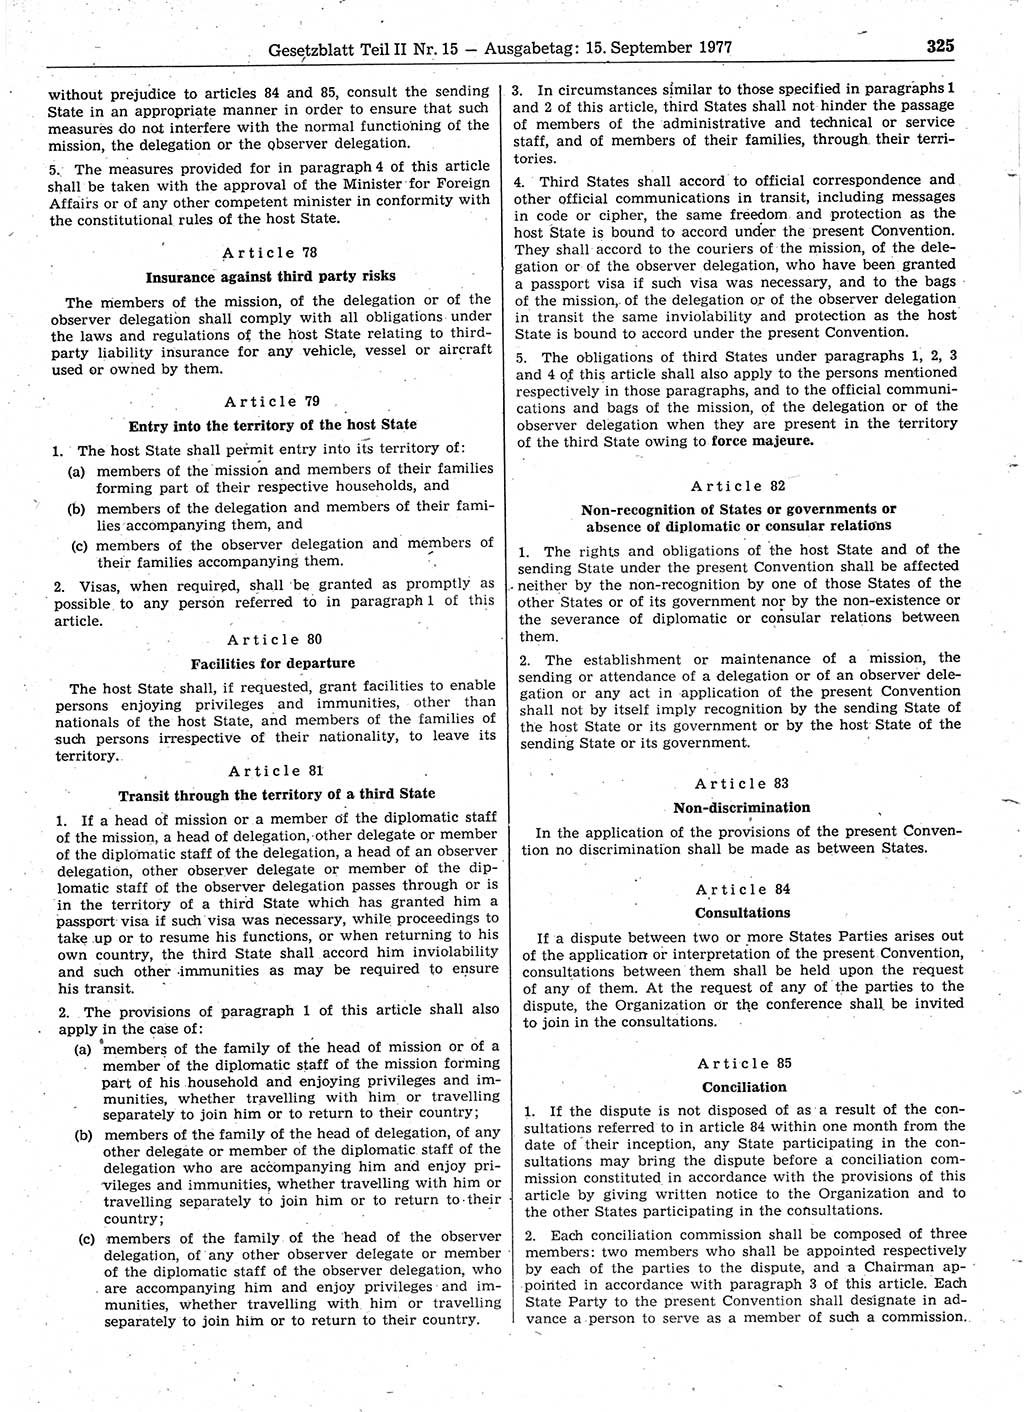 Gesetzblatt (GBl.) der Deutschen Demokratischen Republik (DDR) Teil ⅠⅠ 1977, Seite 325 (GBl. DDR ⅠⅠ 1977, S. 325)